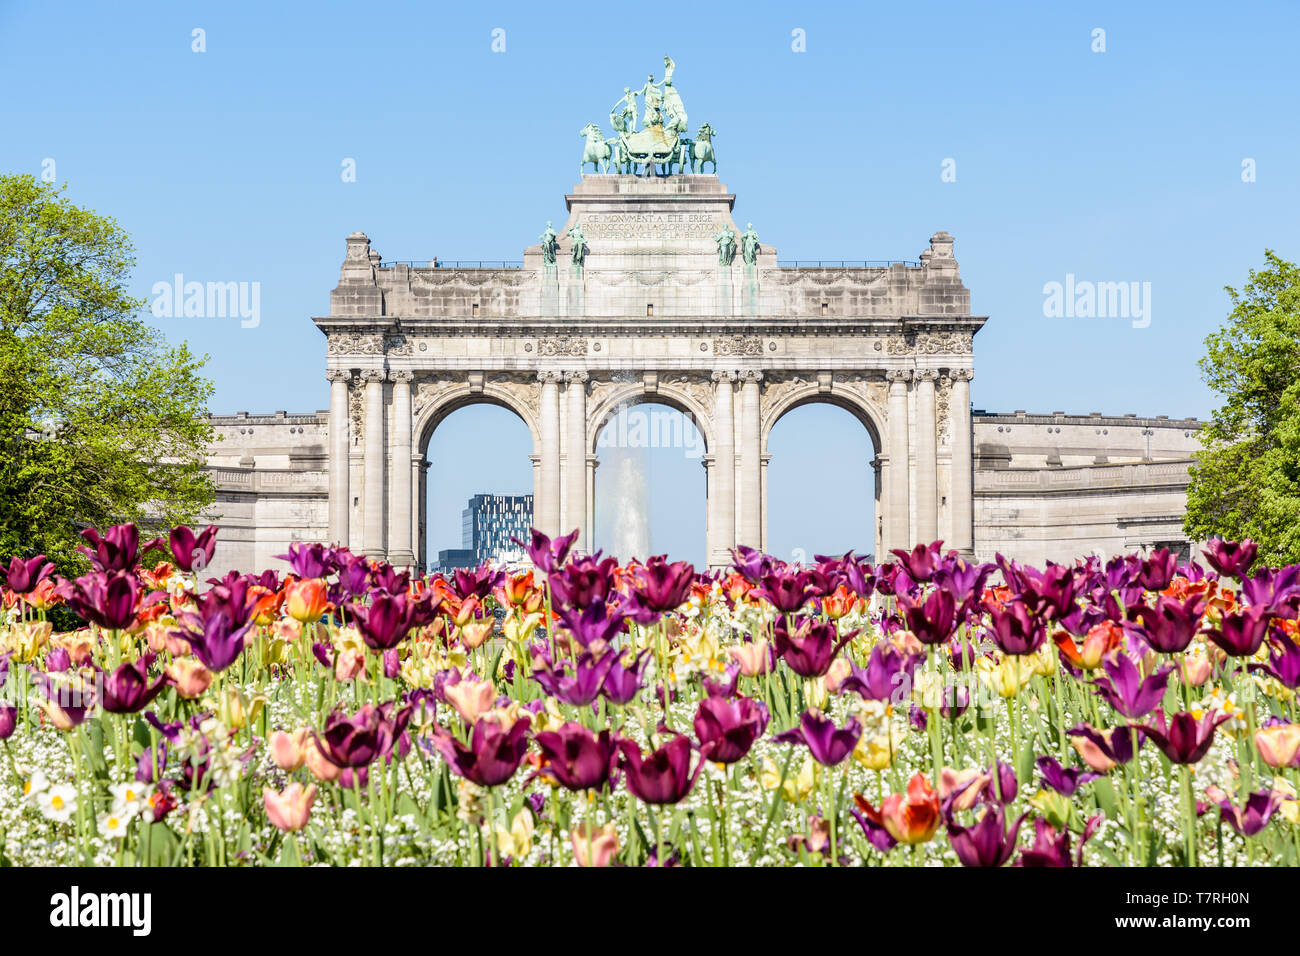 L'arcade du Cinquantenaire, l'Arc de Triomphe érigé dans le parc du Cinquantenaire à Bruxelles, Belgique, de fleurs en fleurs au premier plan. Banque D'Images